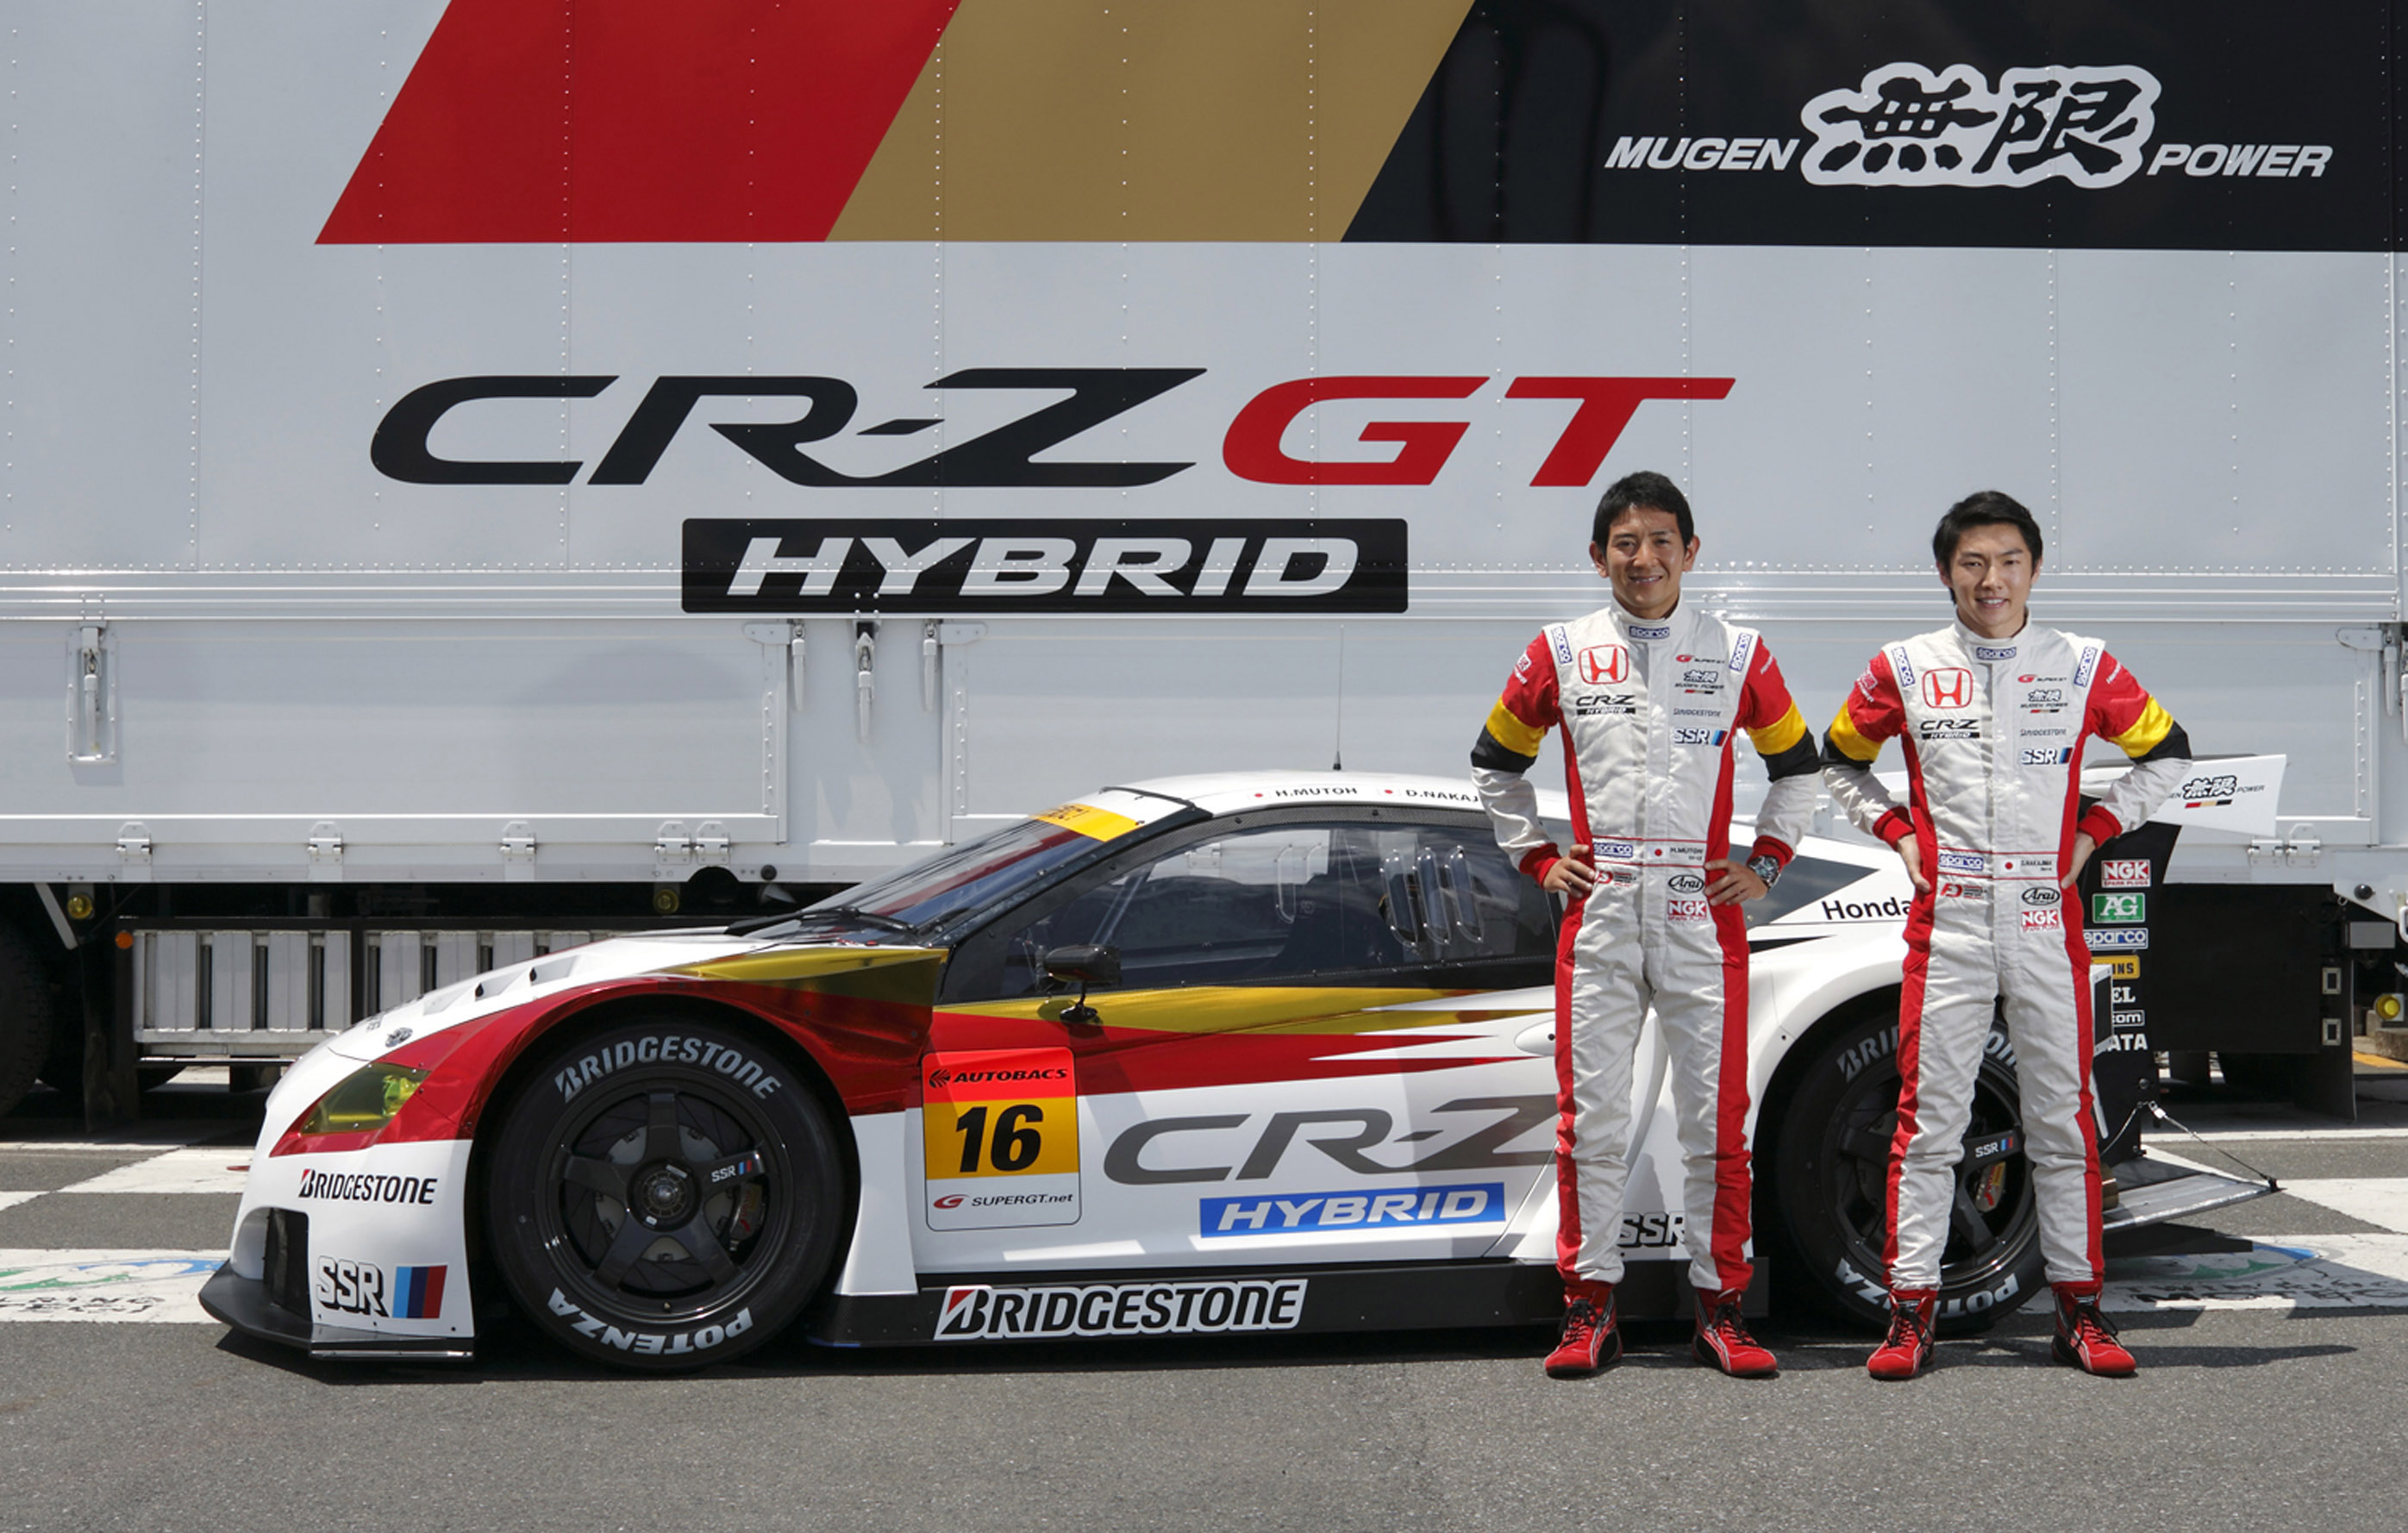 MUGEN Honda CR-Z GT racing car